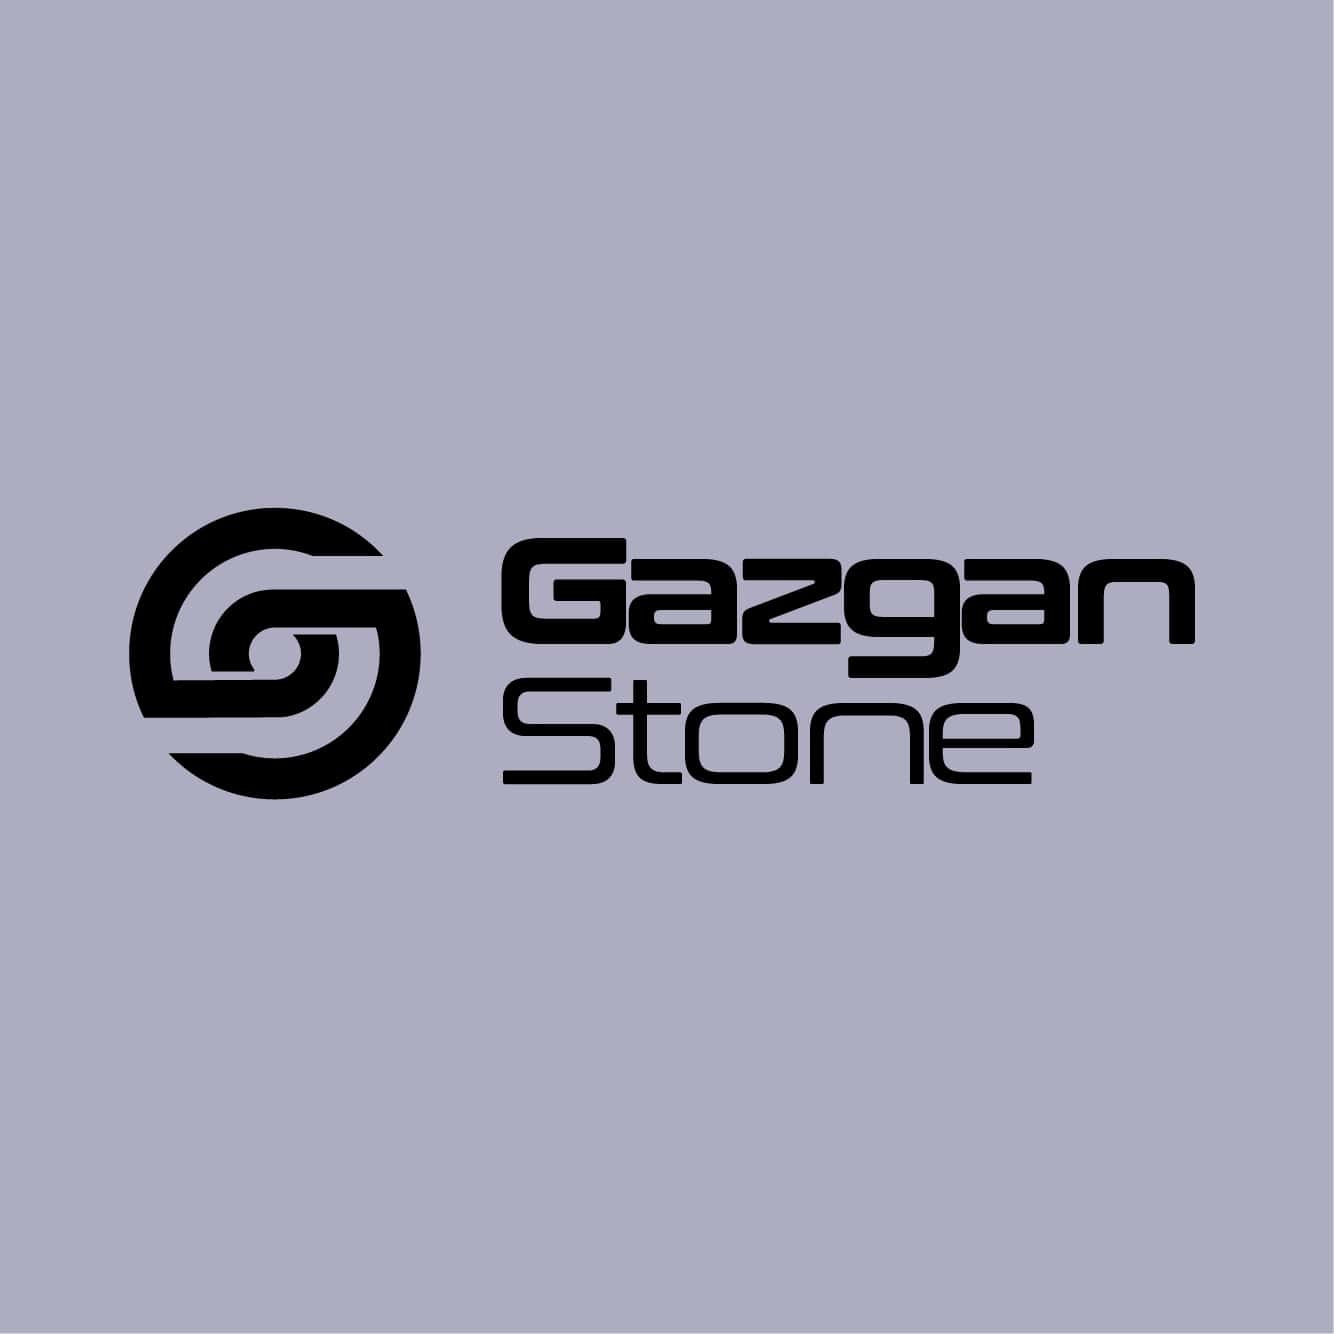 Gazgan Stone